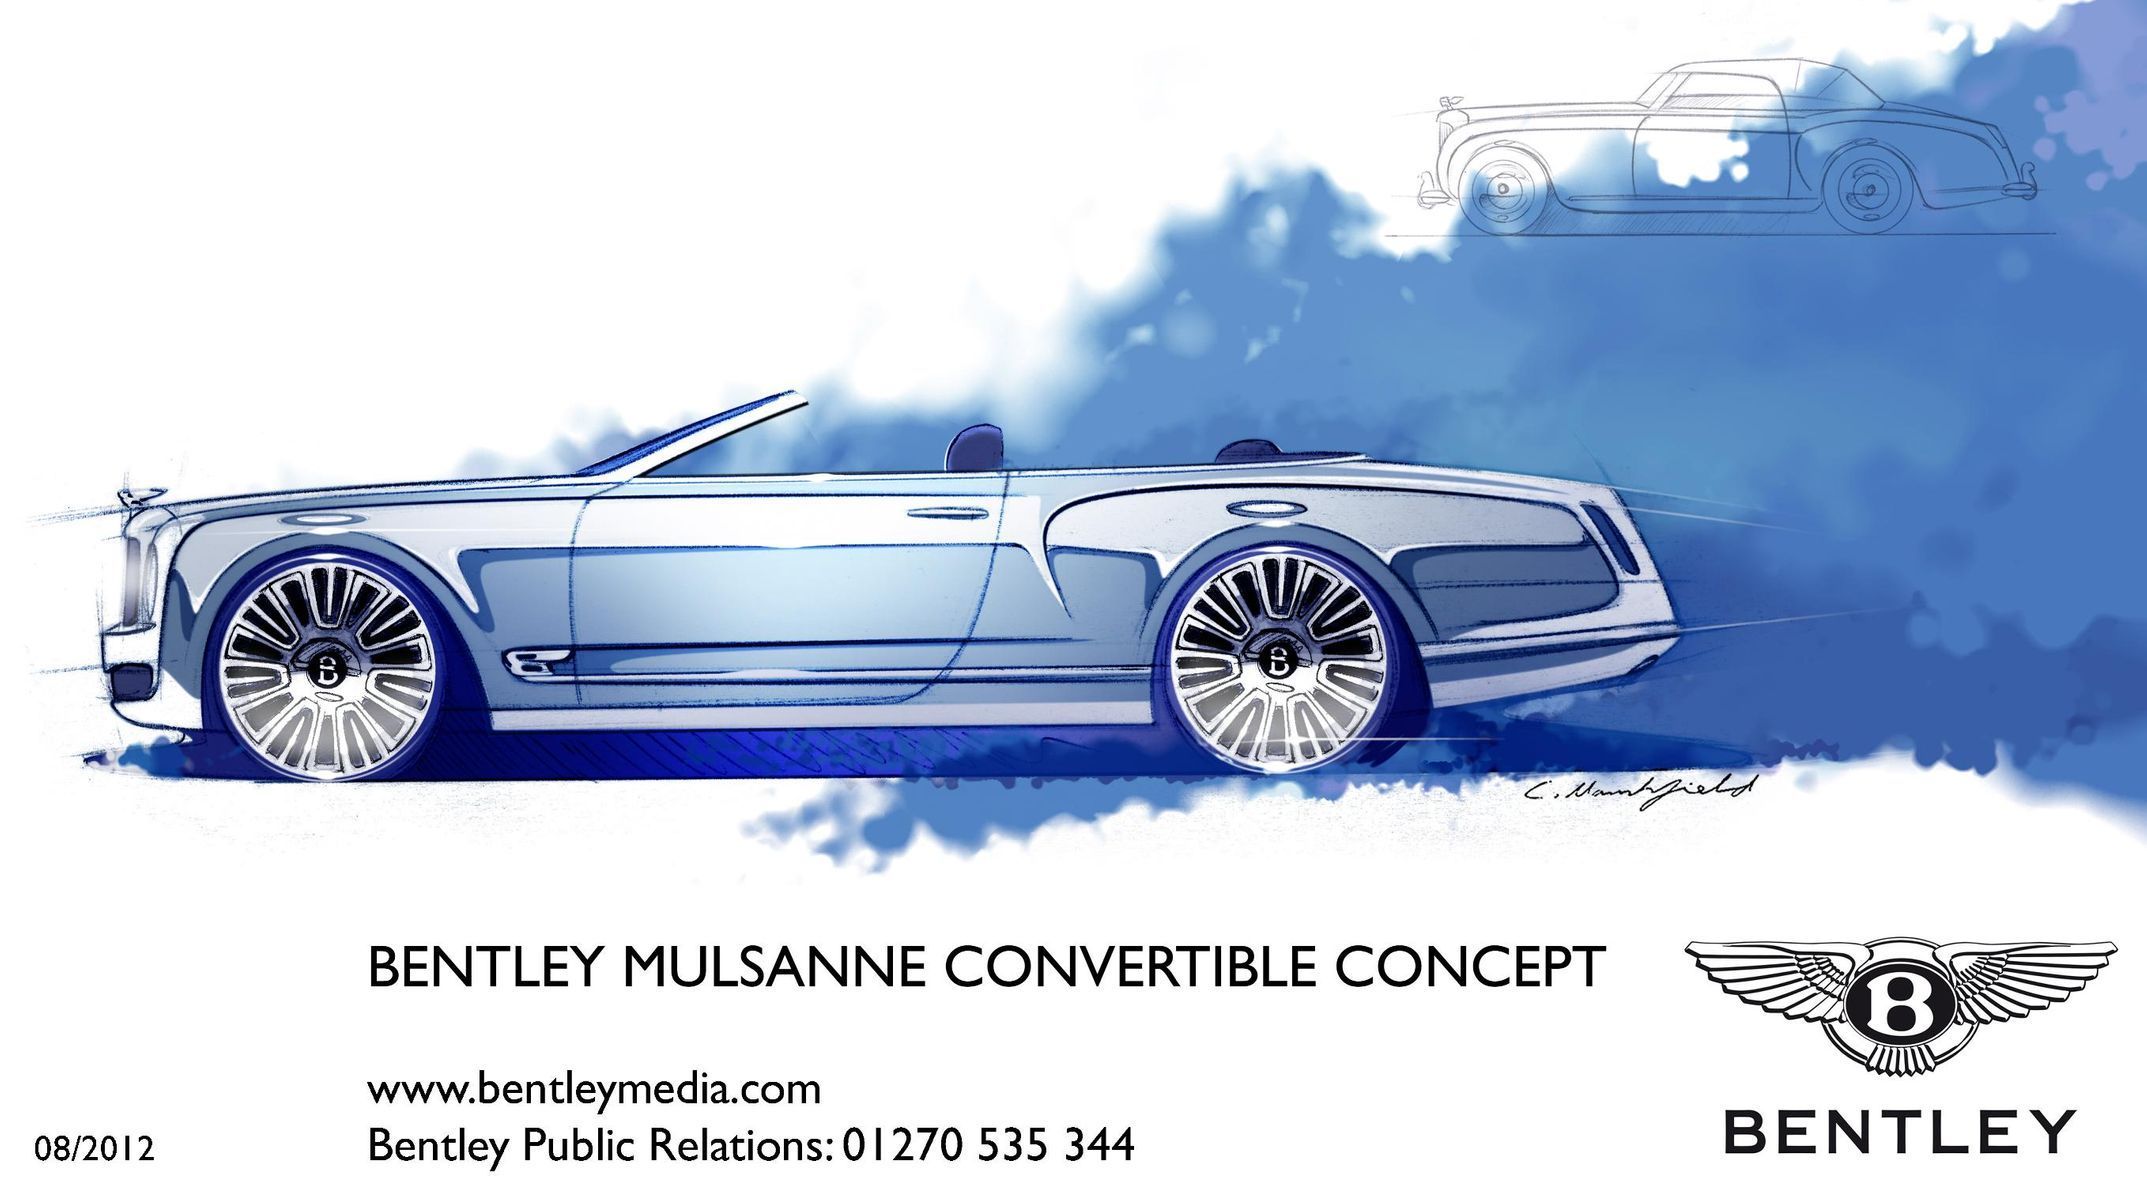 Bentley Mulsanne Convertible